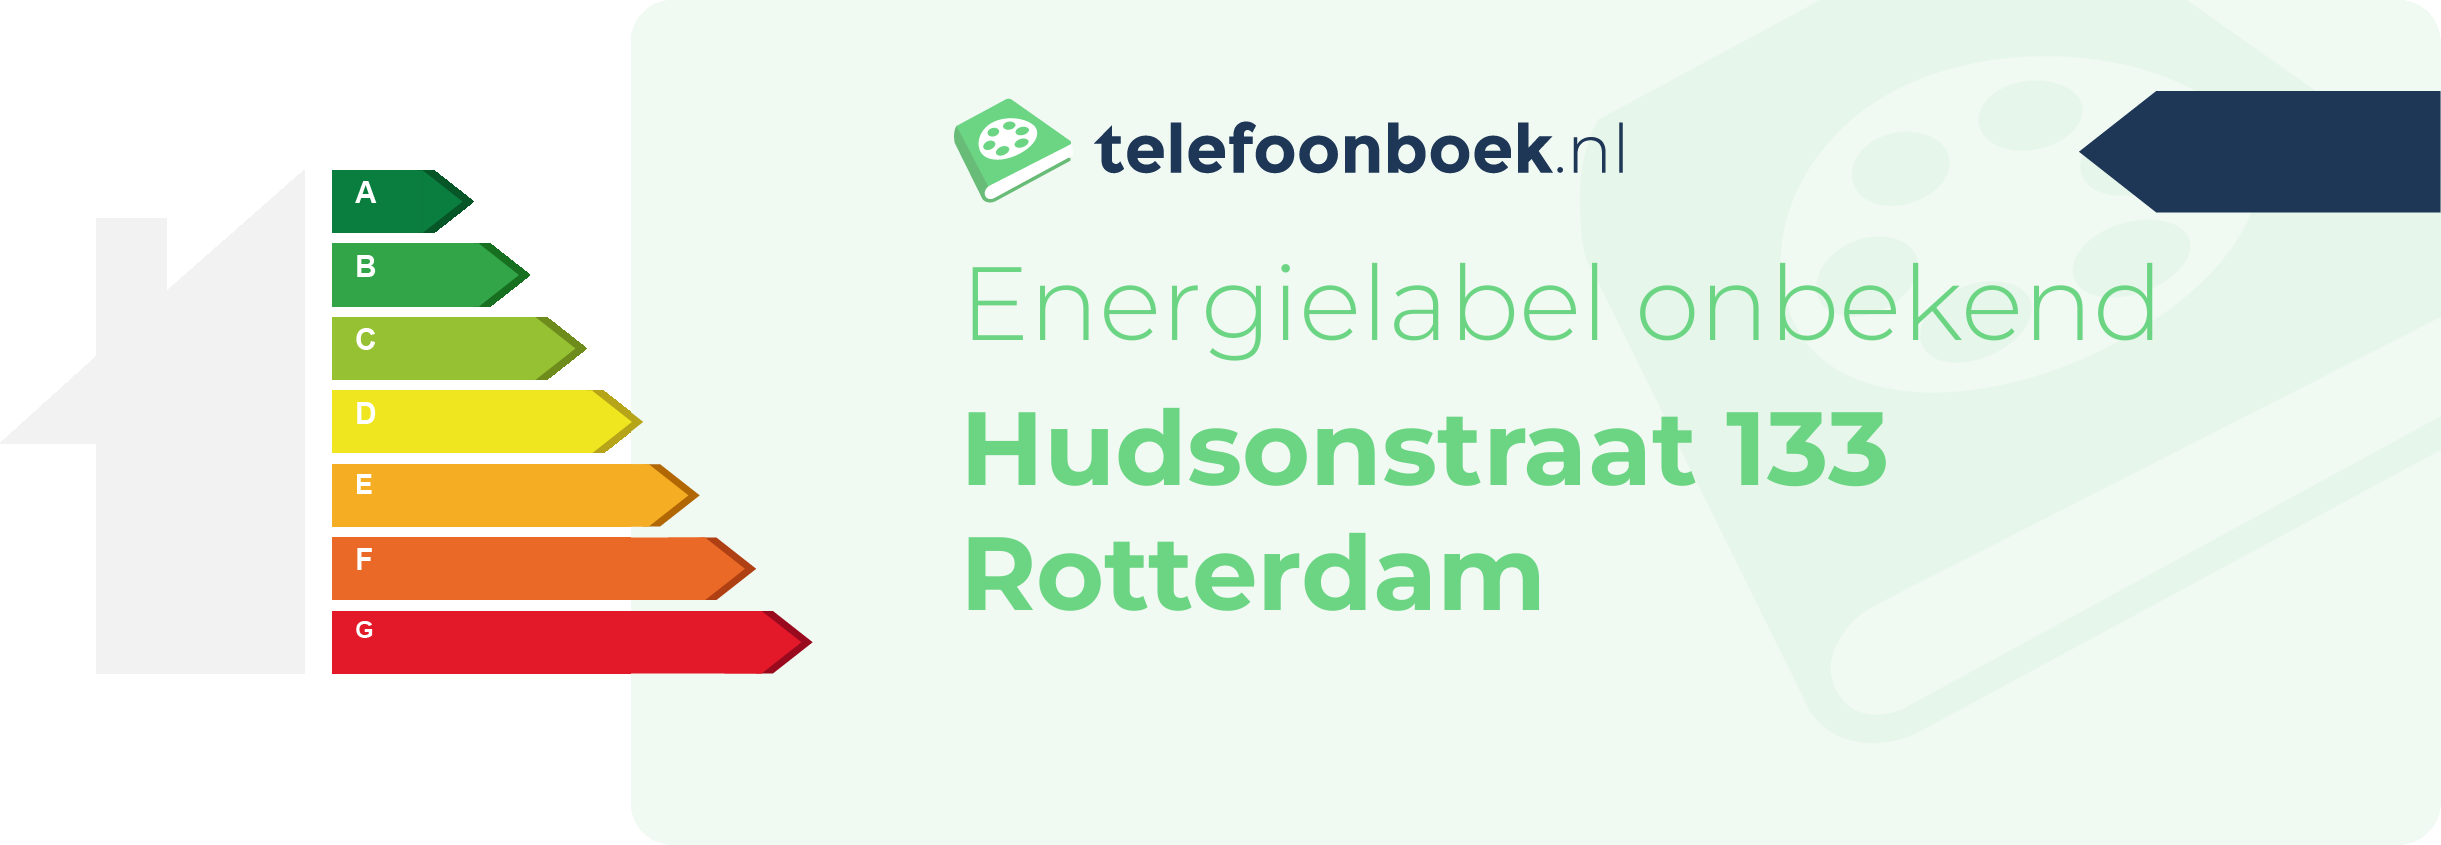 Energielabel Hudsonstraat 133 Rotterdam